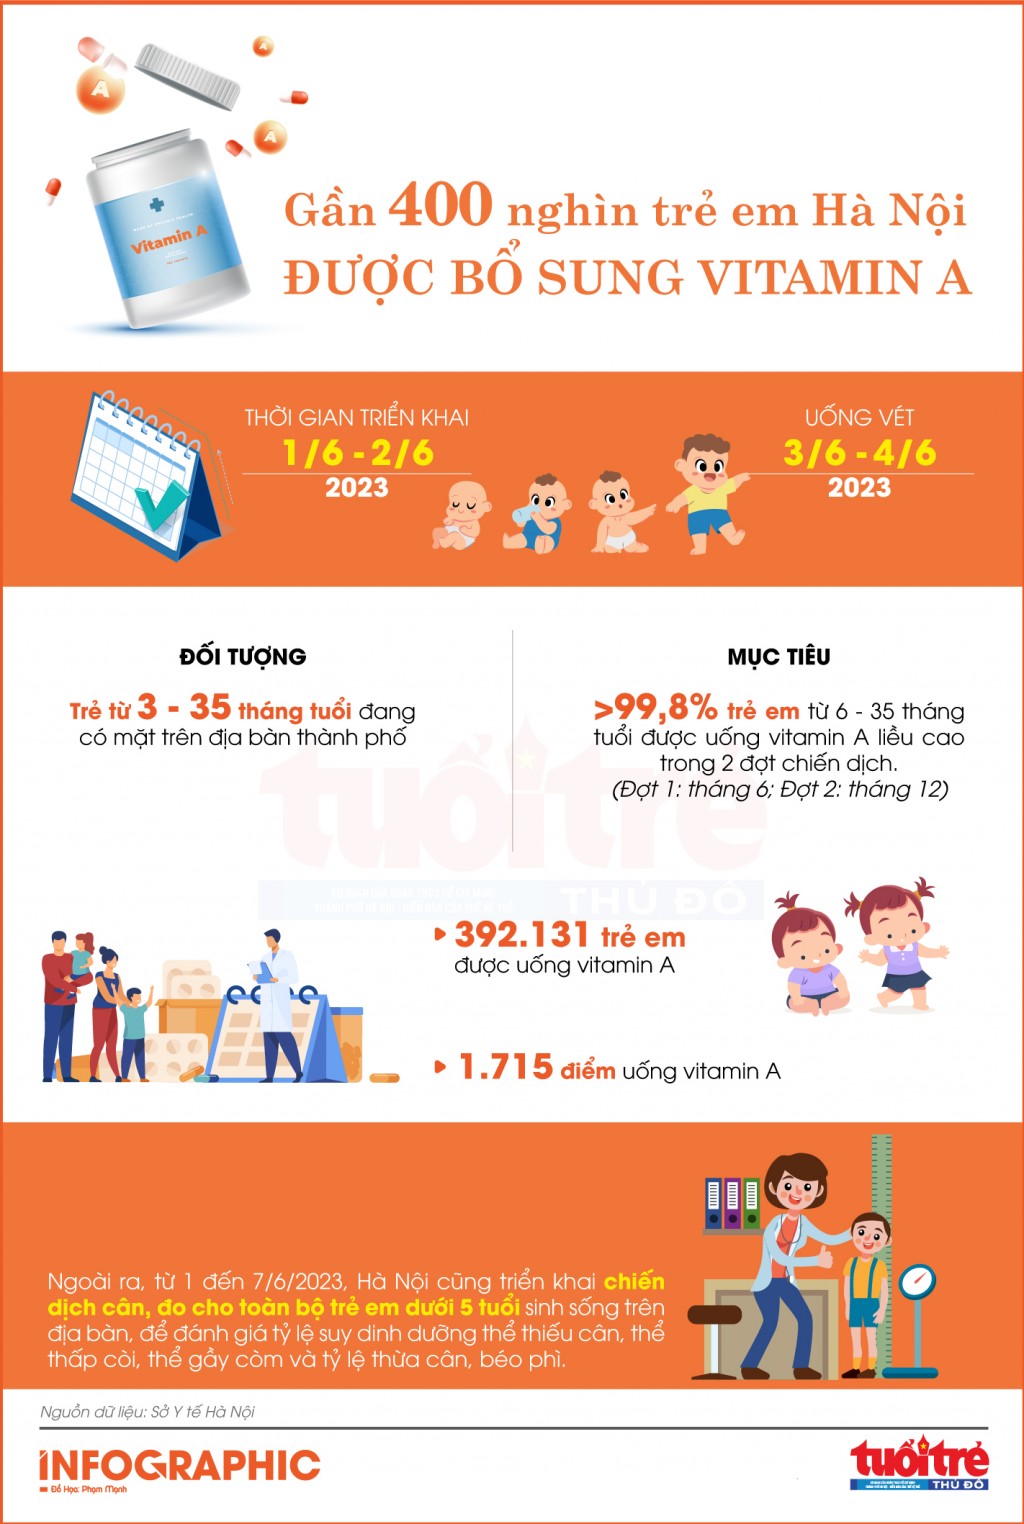 Gần 400 nghìn trẻ em Hà Nội được bổ sung vitamin A